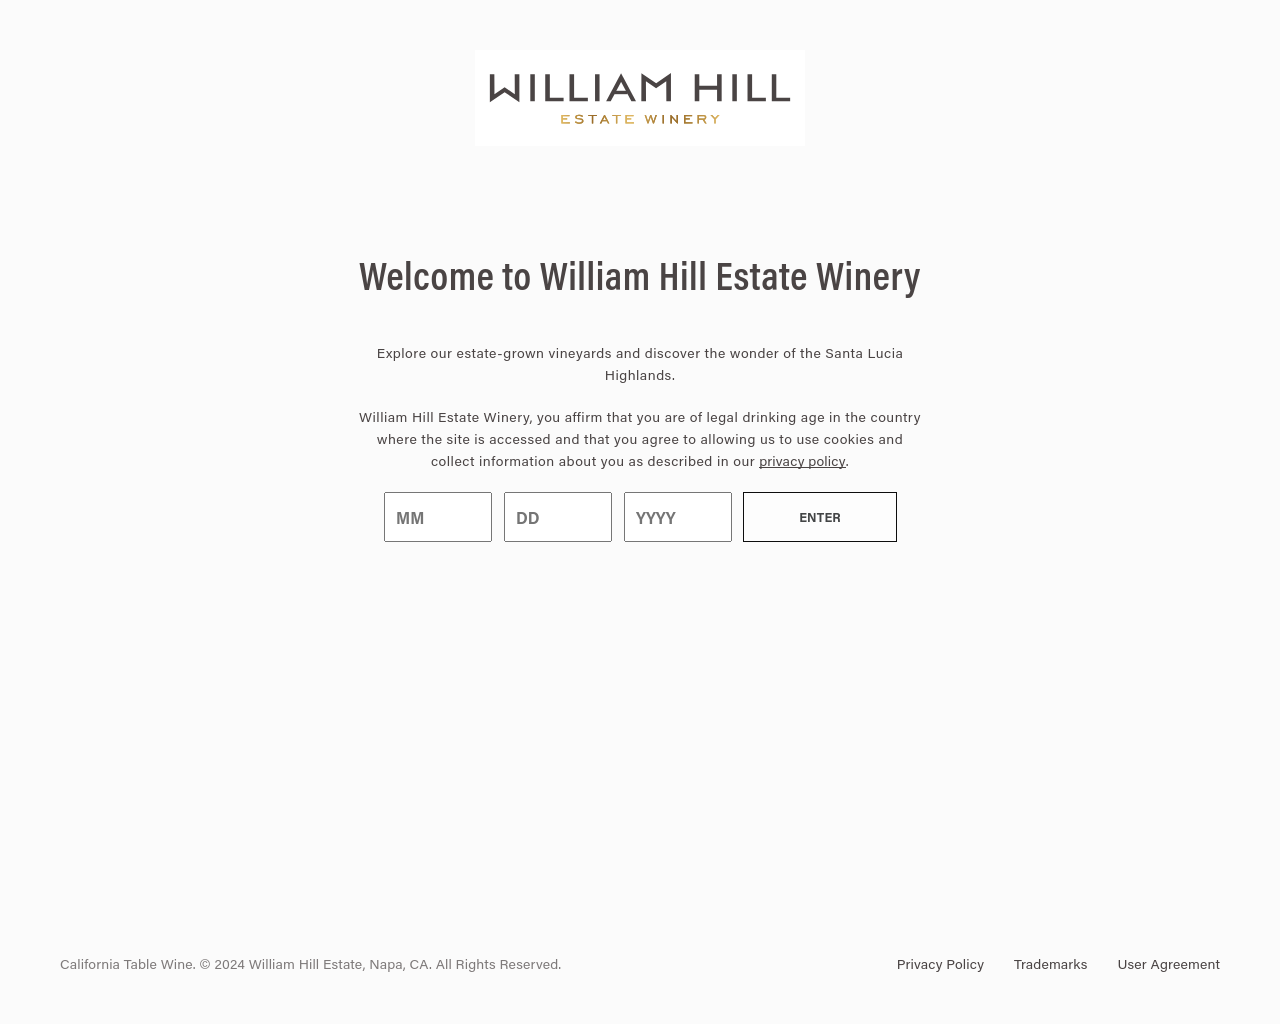 williamhillestate.com